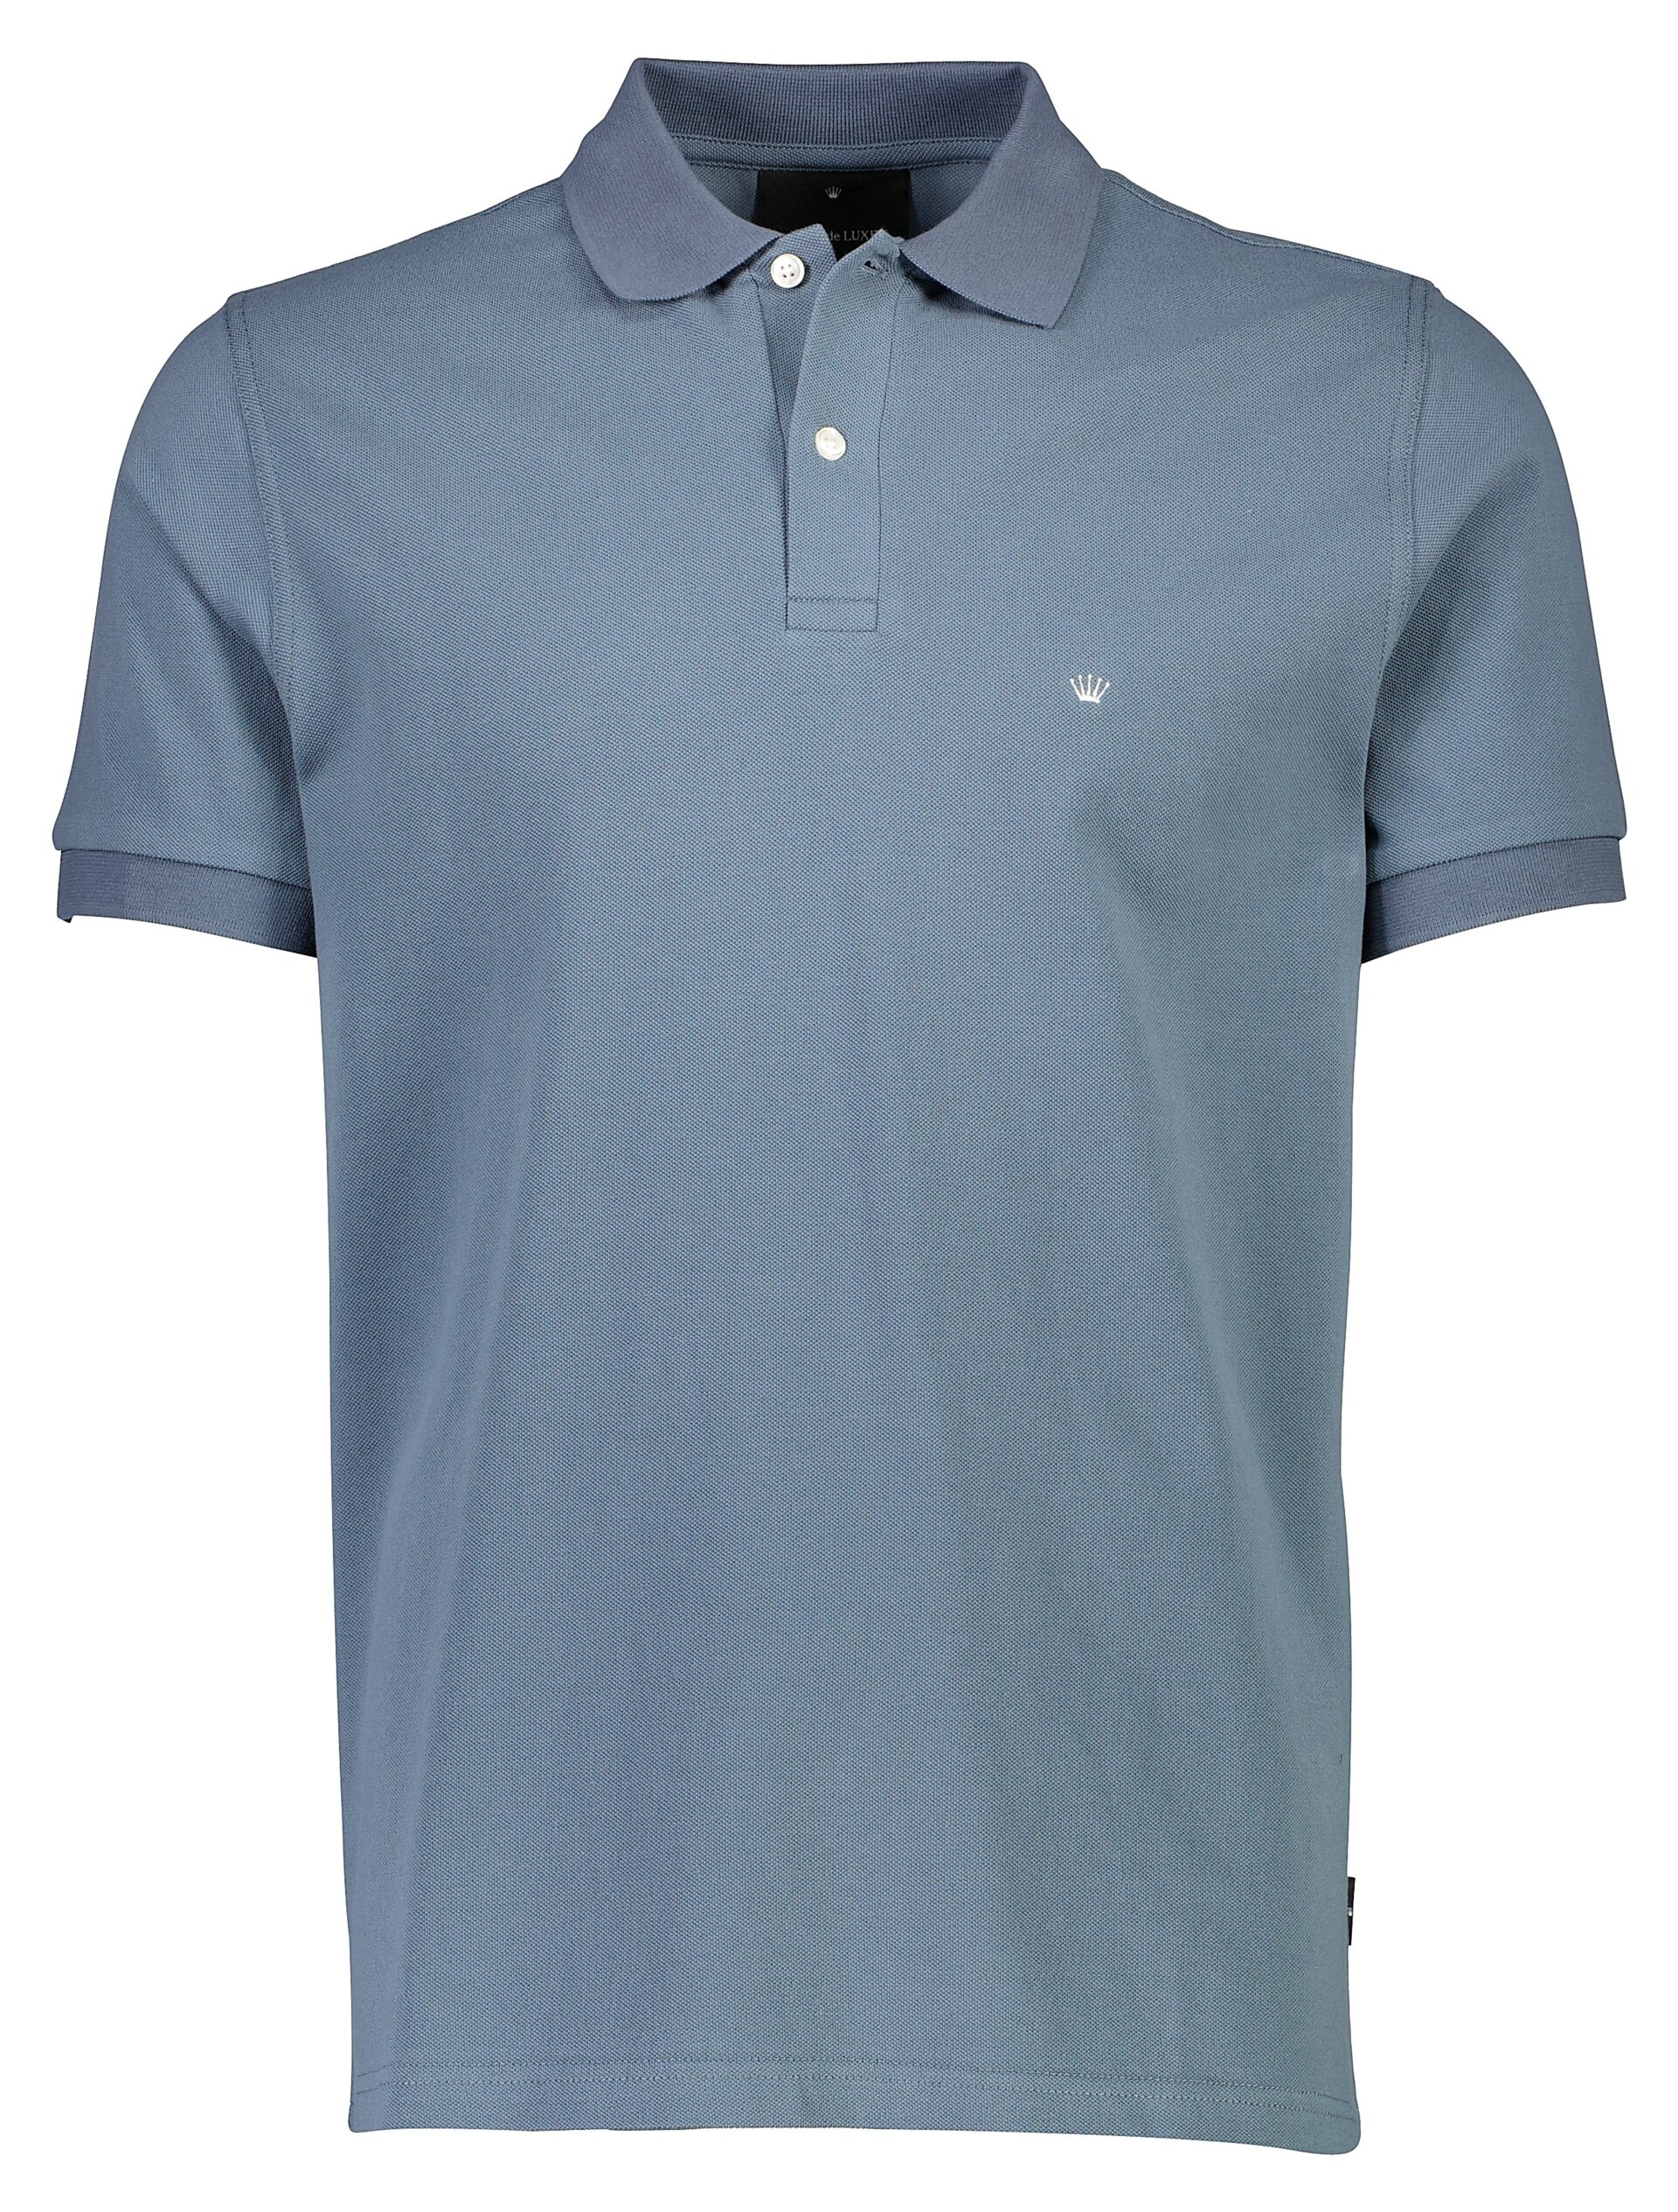 Junk de Luxe Polo shirt blue / blue grey